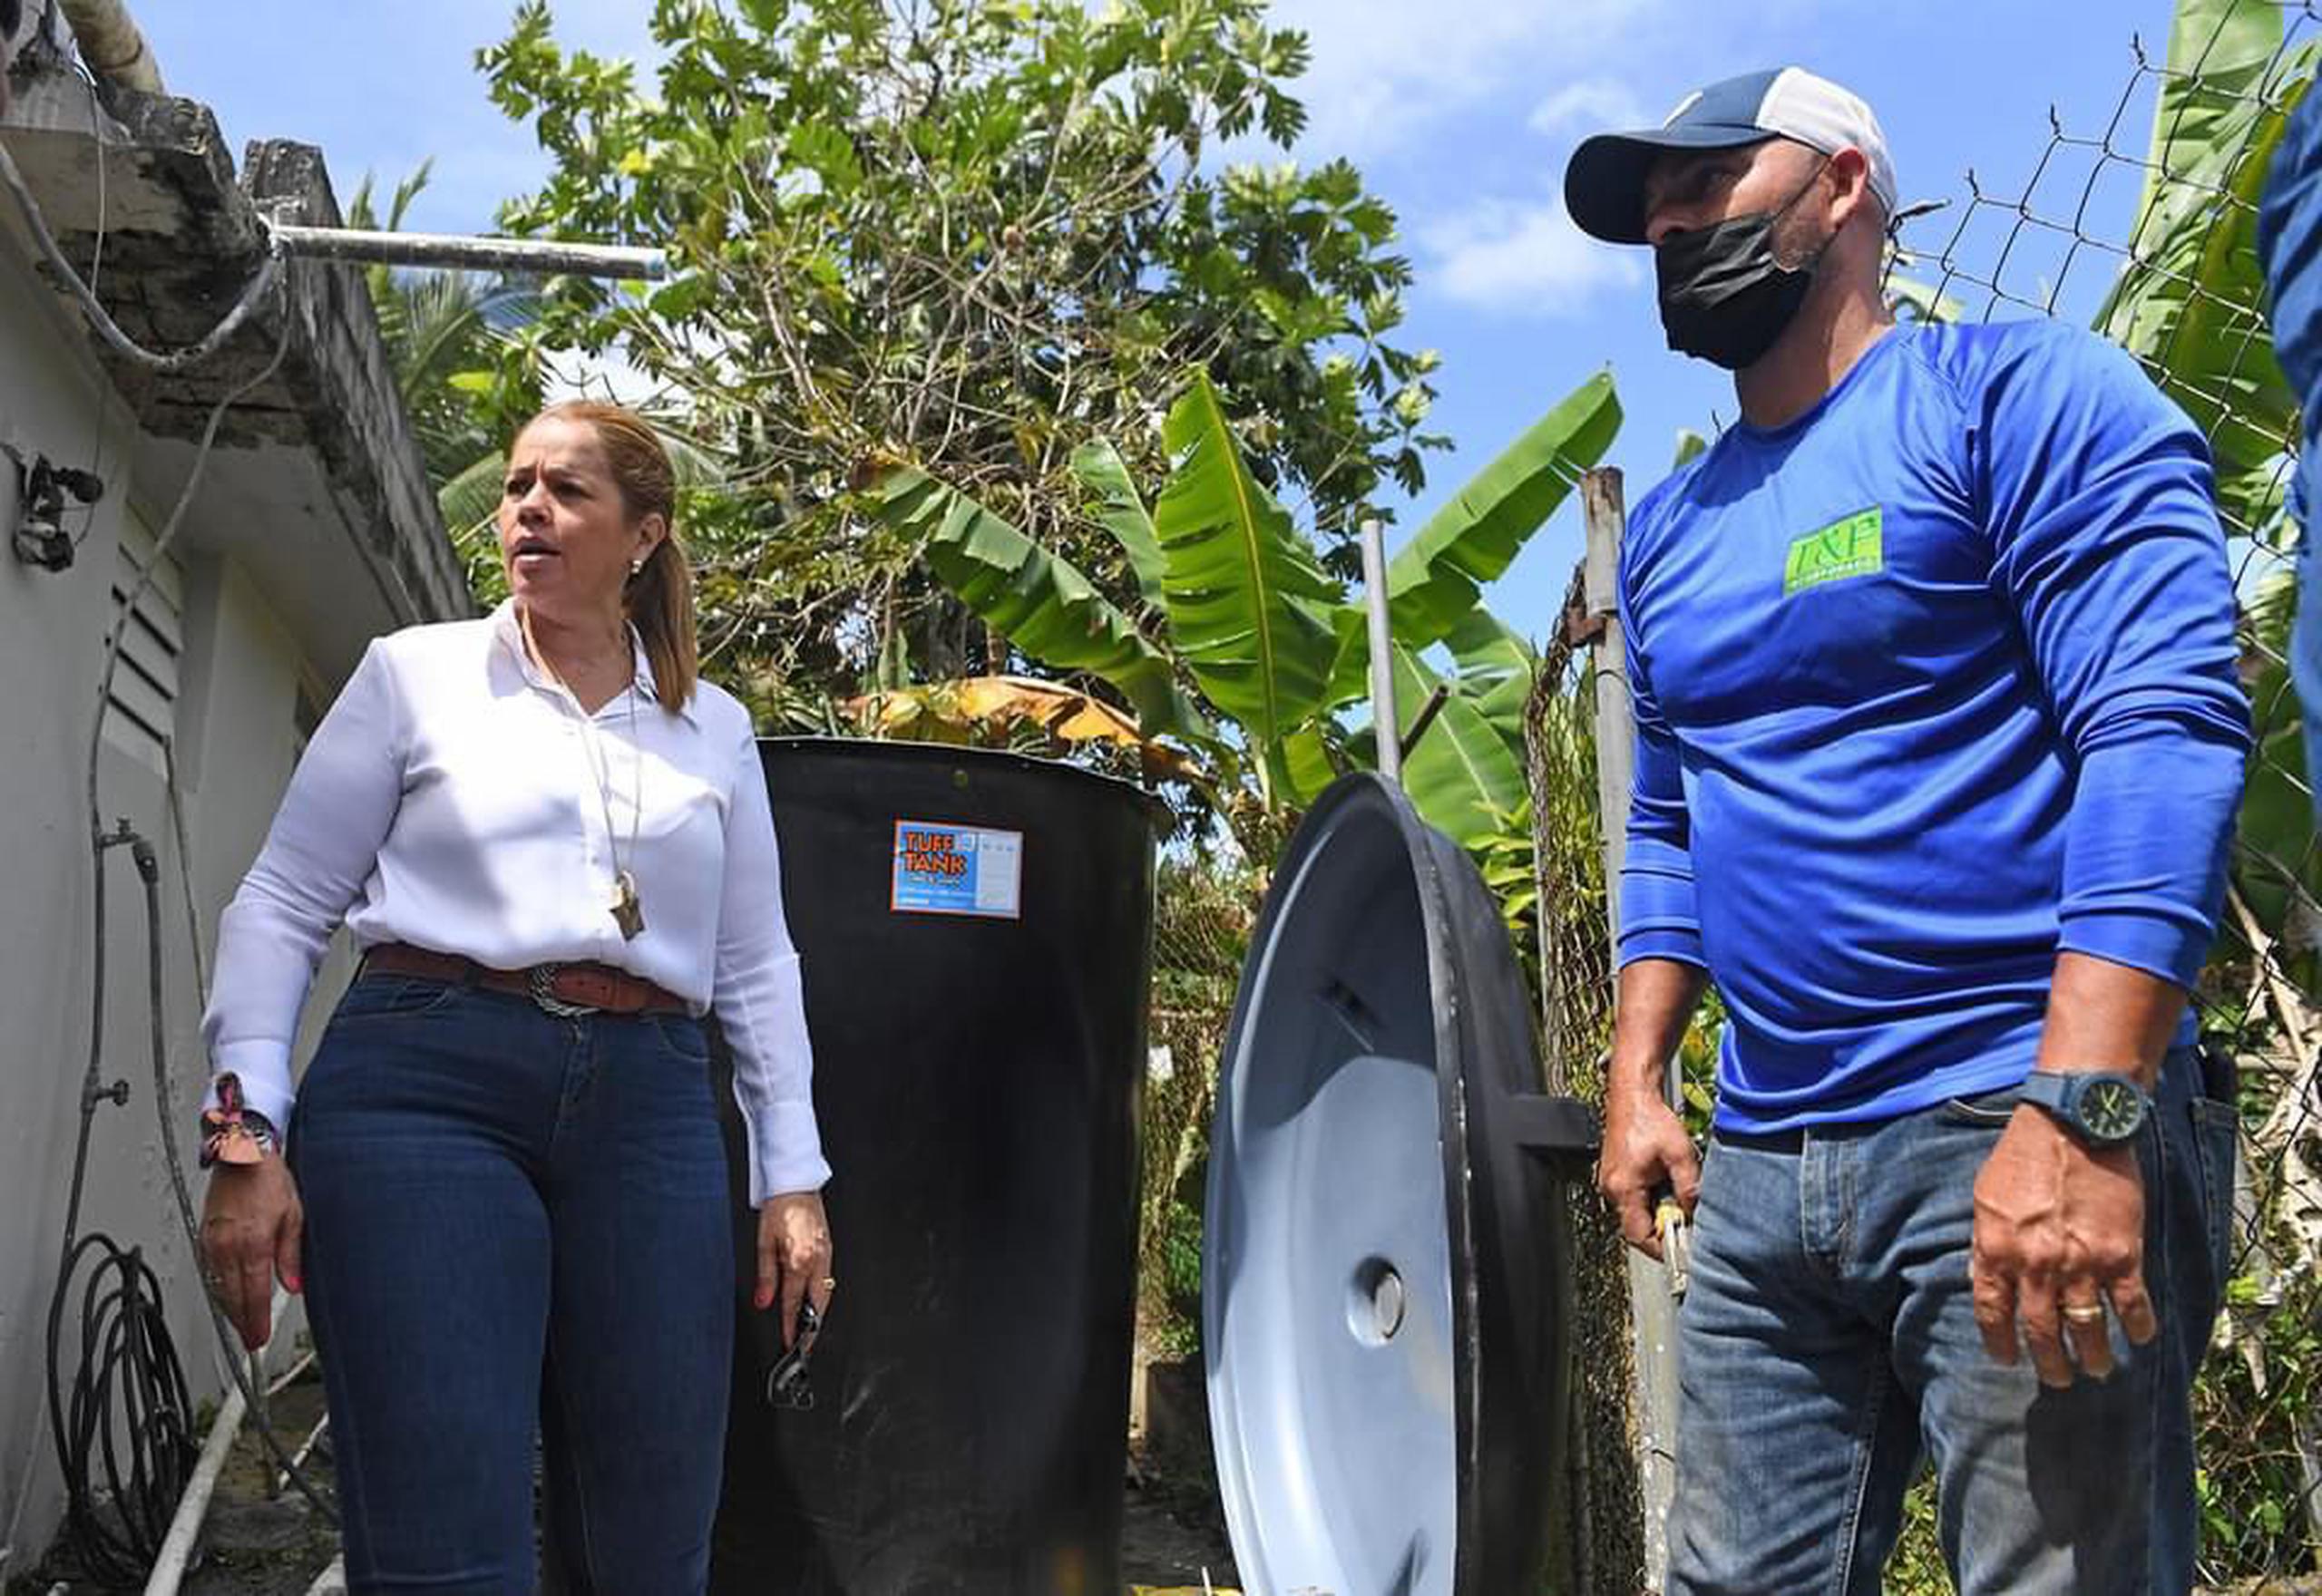 El racionamiento afecta a más de 30,000 abonados que reciben agua de la planta de filtros de Canóvanas, mencionó la funcionaria, precisó la alcaldesa Lornna Soto.